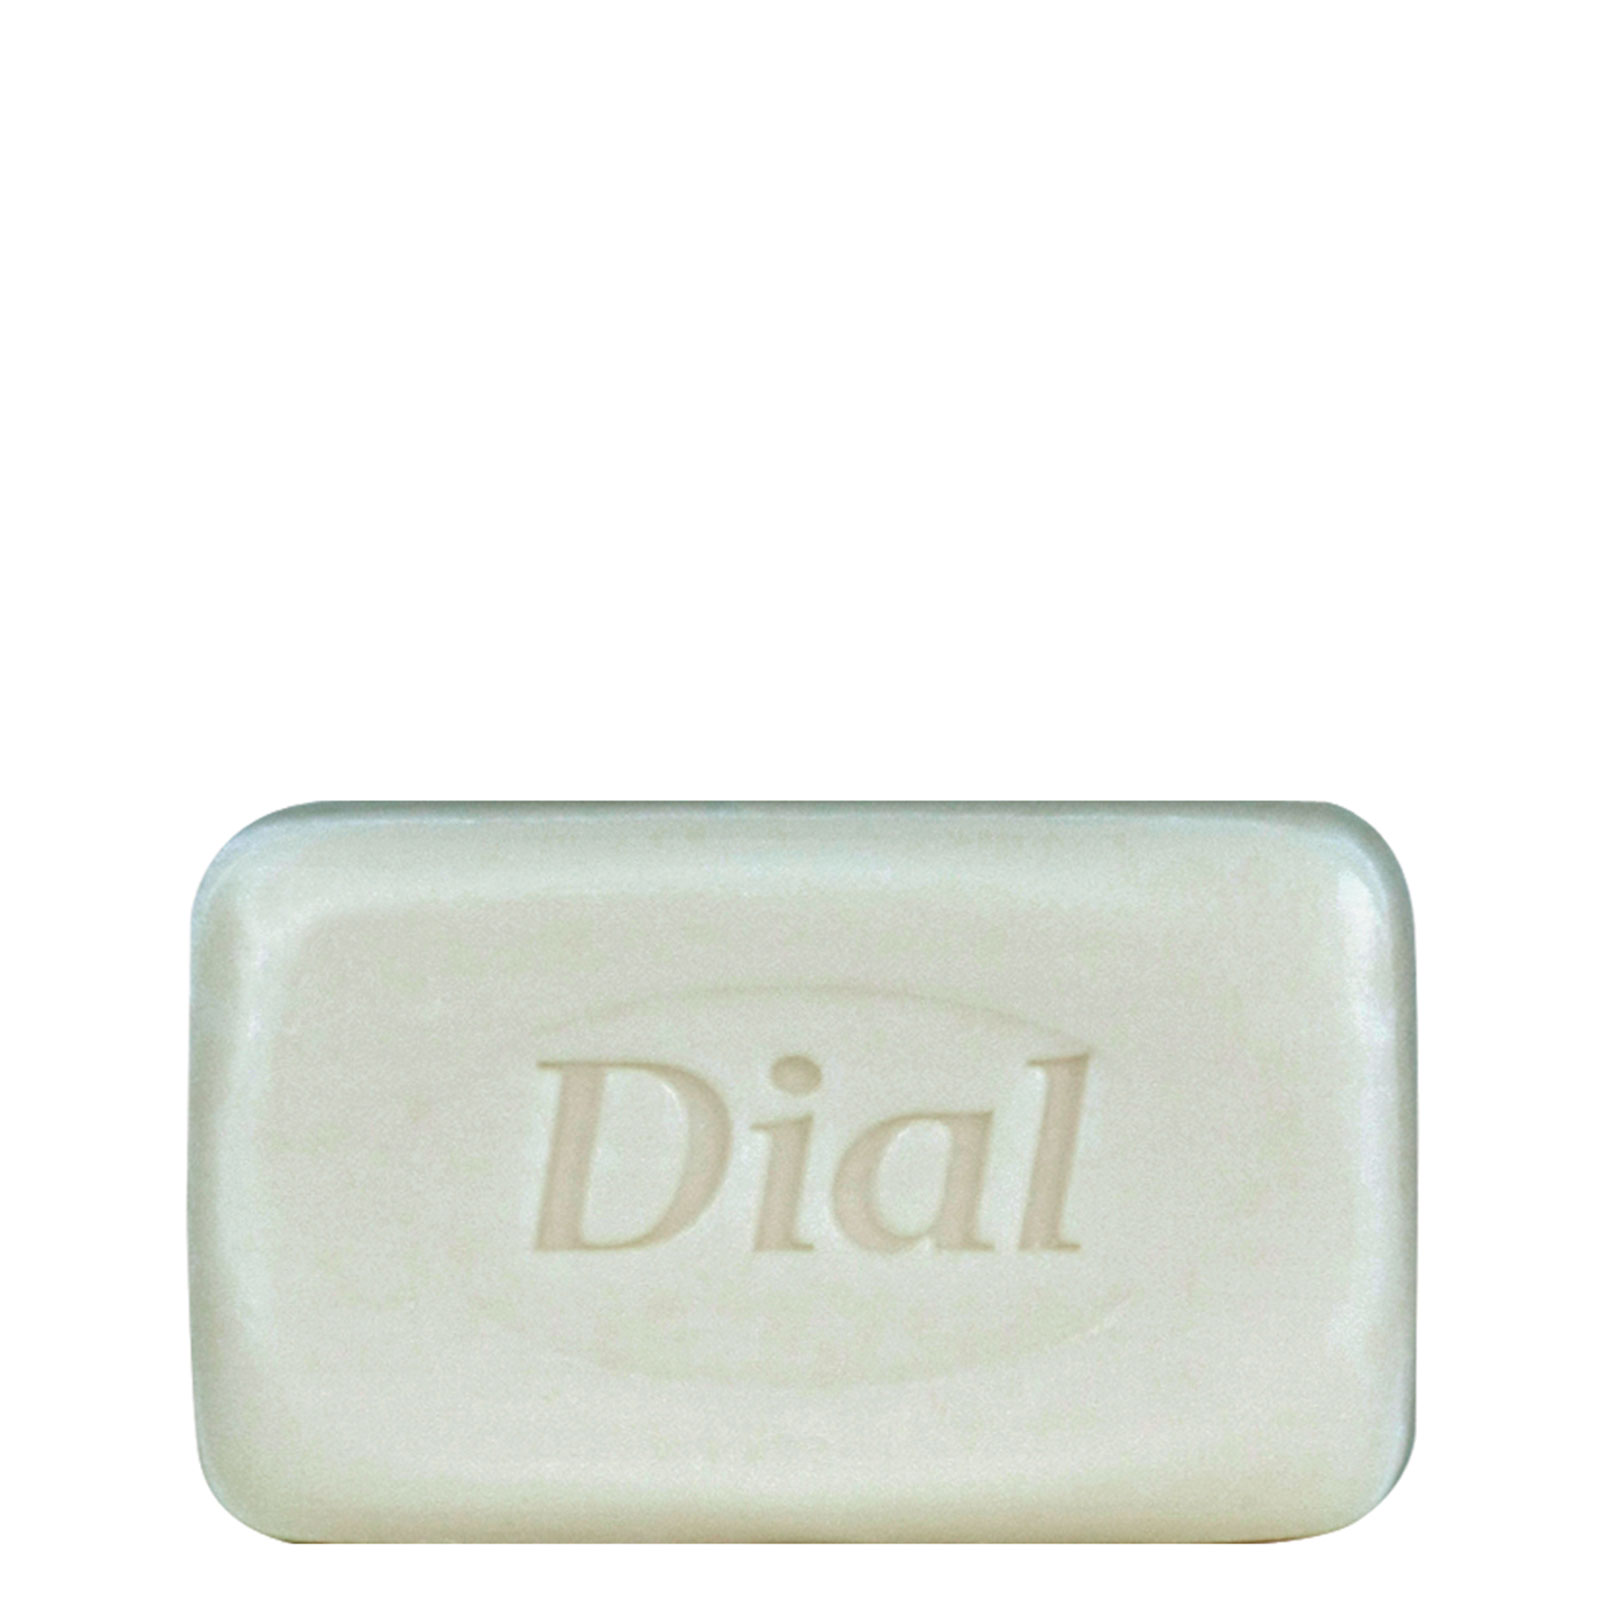 Dial Basics Bar Soap